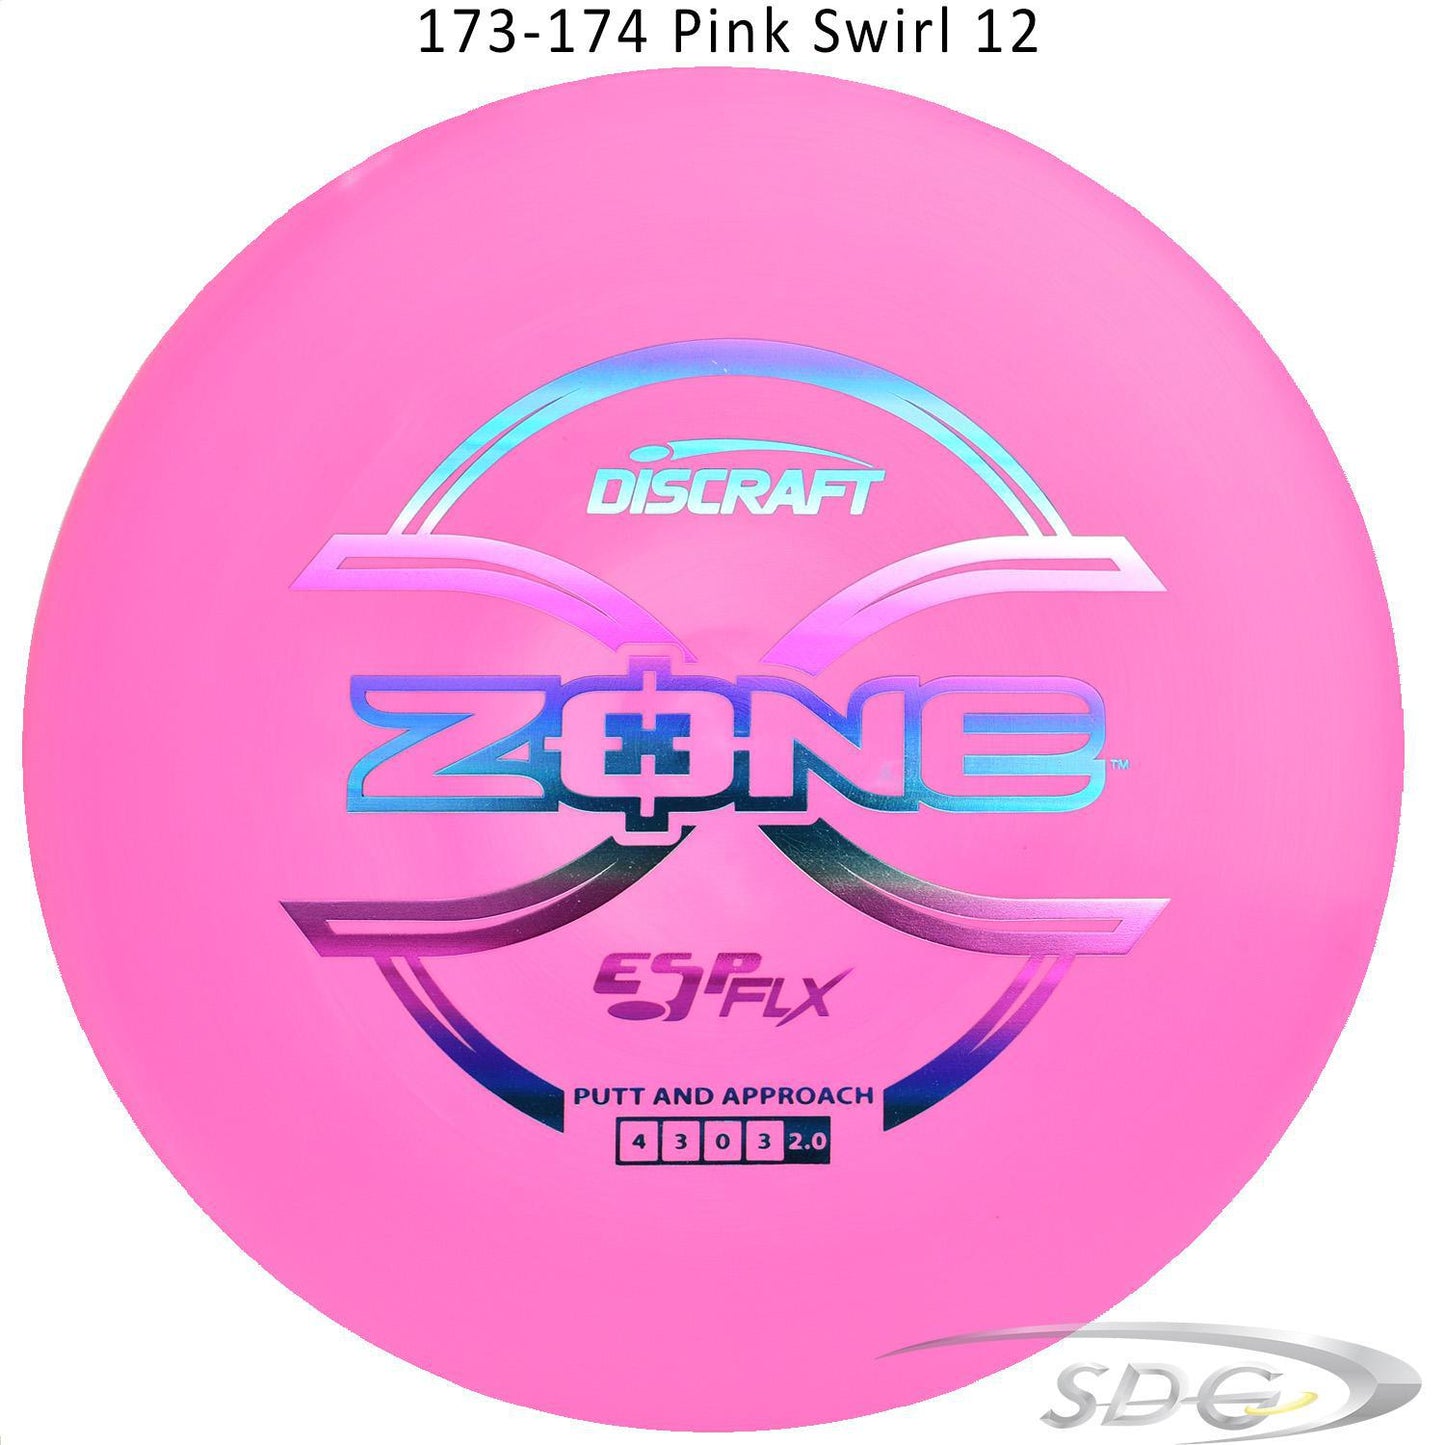 discraft-esp-flx-zone-disc-golf-putter 173-174 Pink Swirl 12 